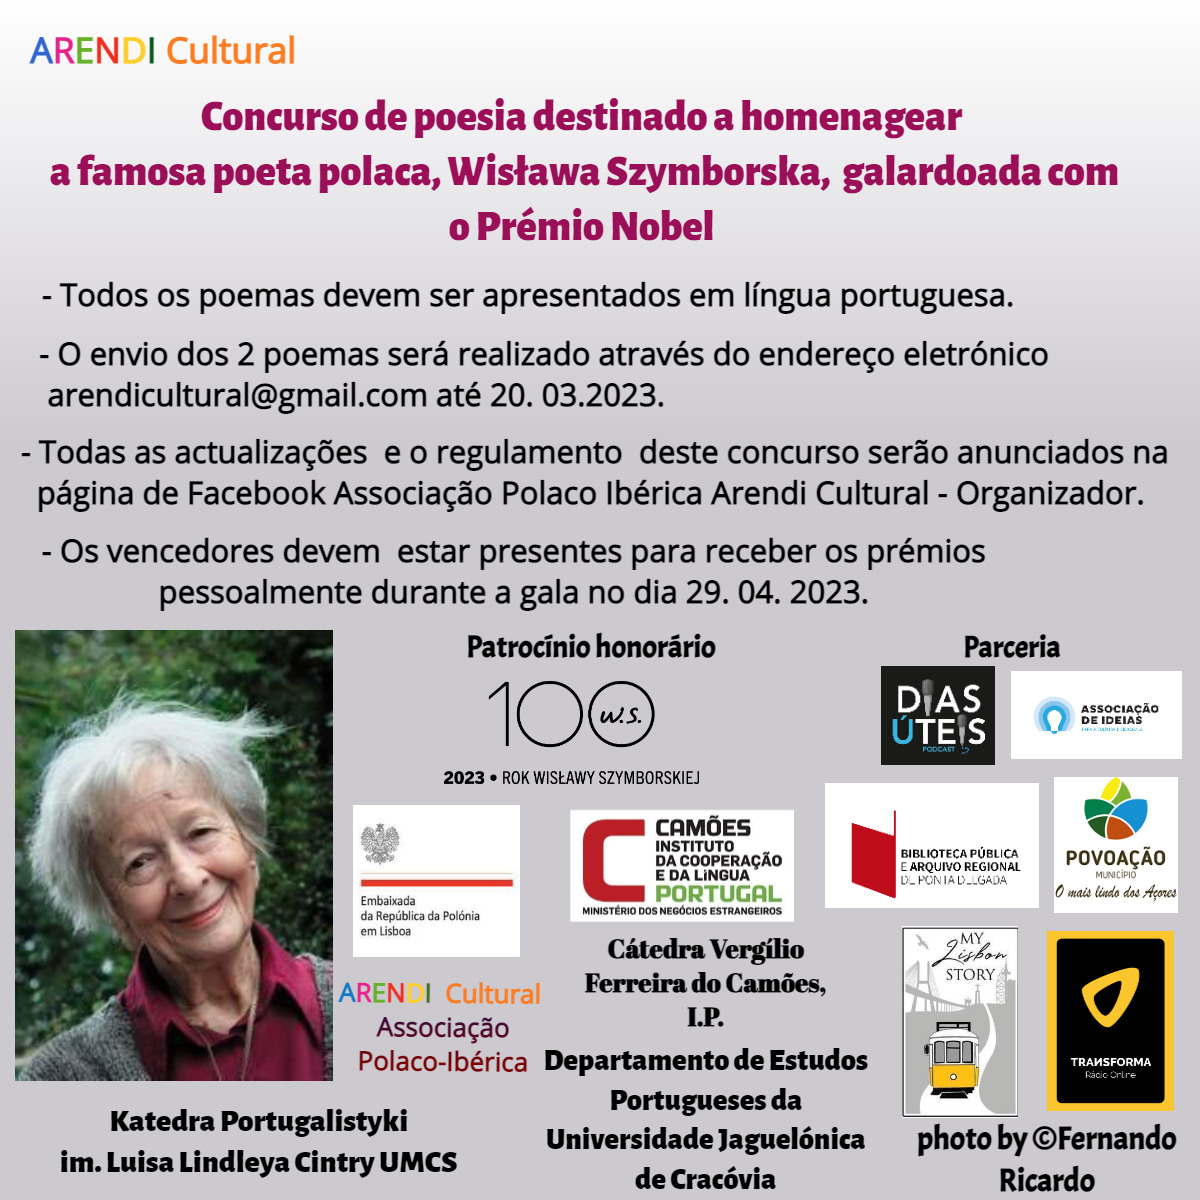 Konkurs poetycki dla poetów portugalskich dedykowany Wisławie Szymborskiej na Azorach